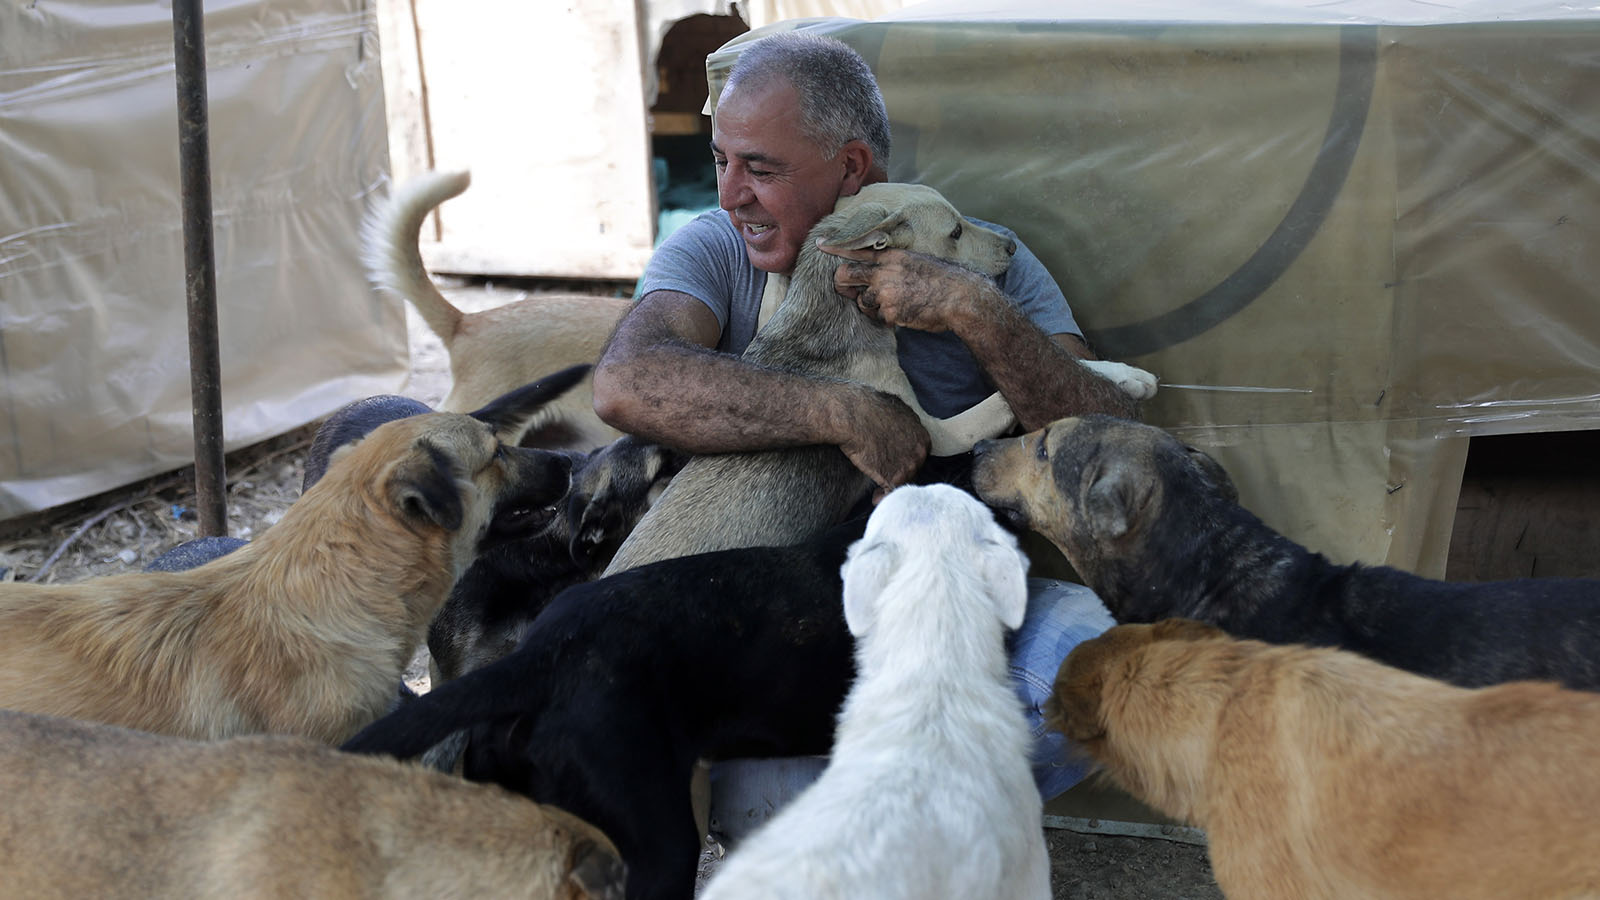 أنقذه كلب في حرب تموز: حسين حمزة يرد الجميل